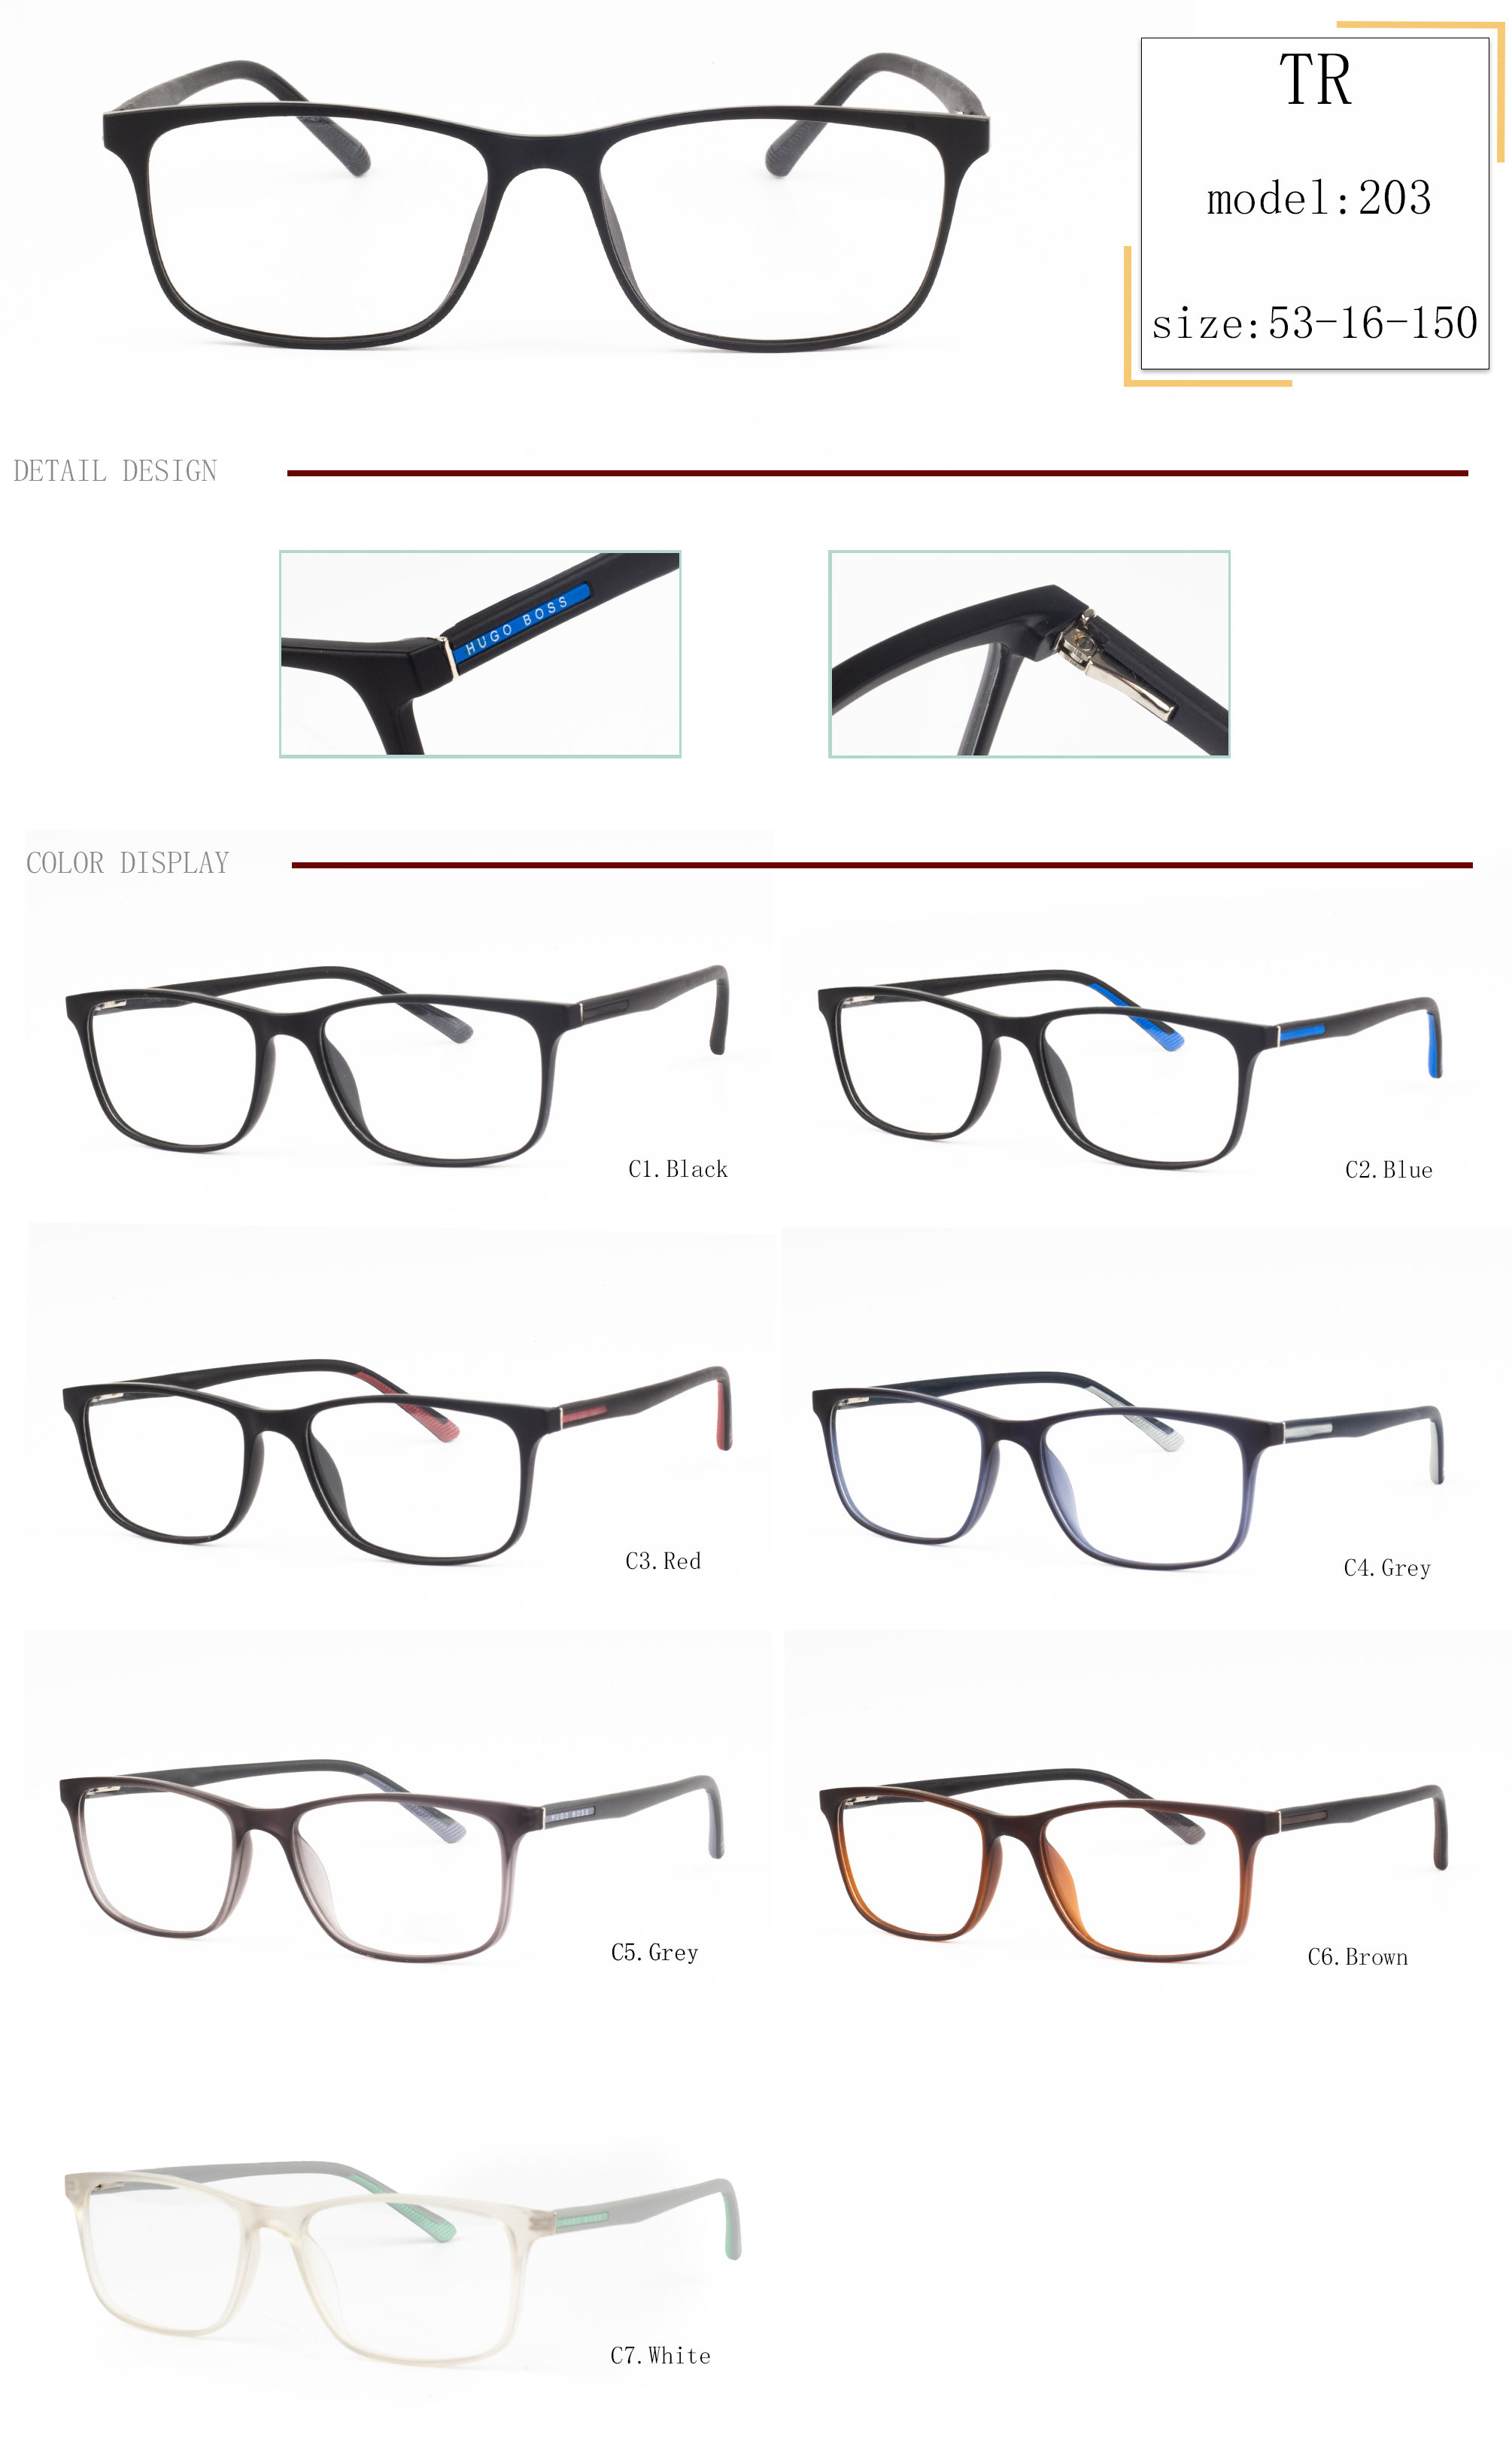 kompani me porosi të syzeve